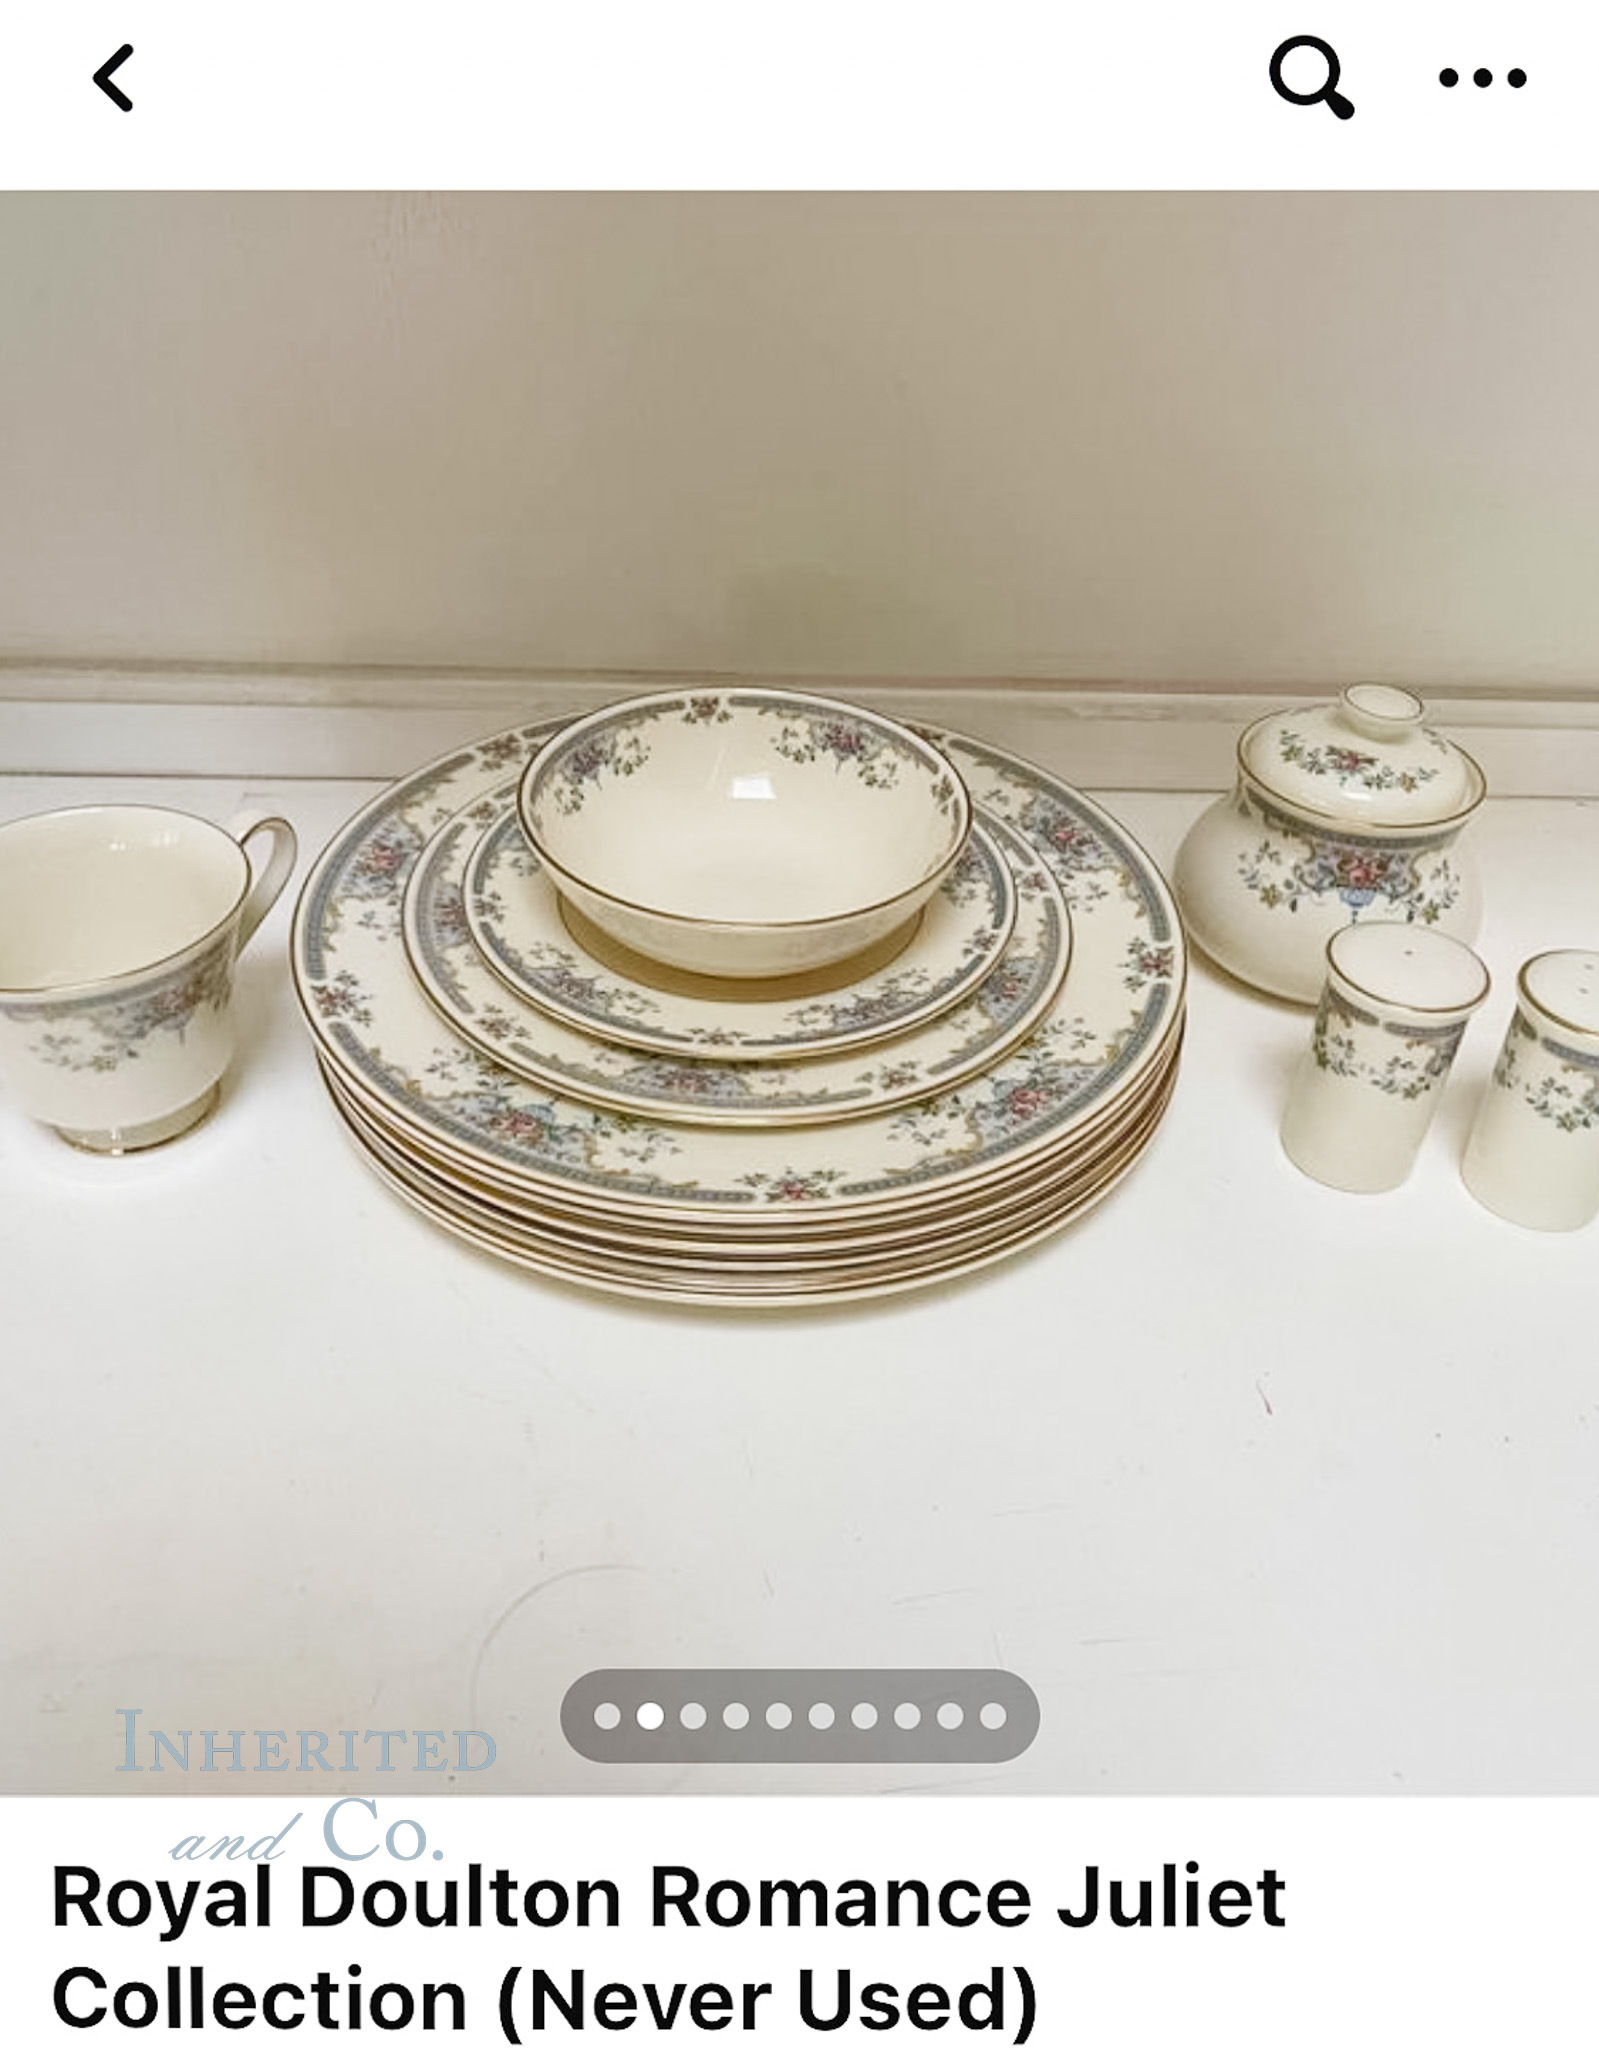 Facebook Marketplace listing for vintage Royal Doulton set